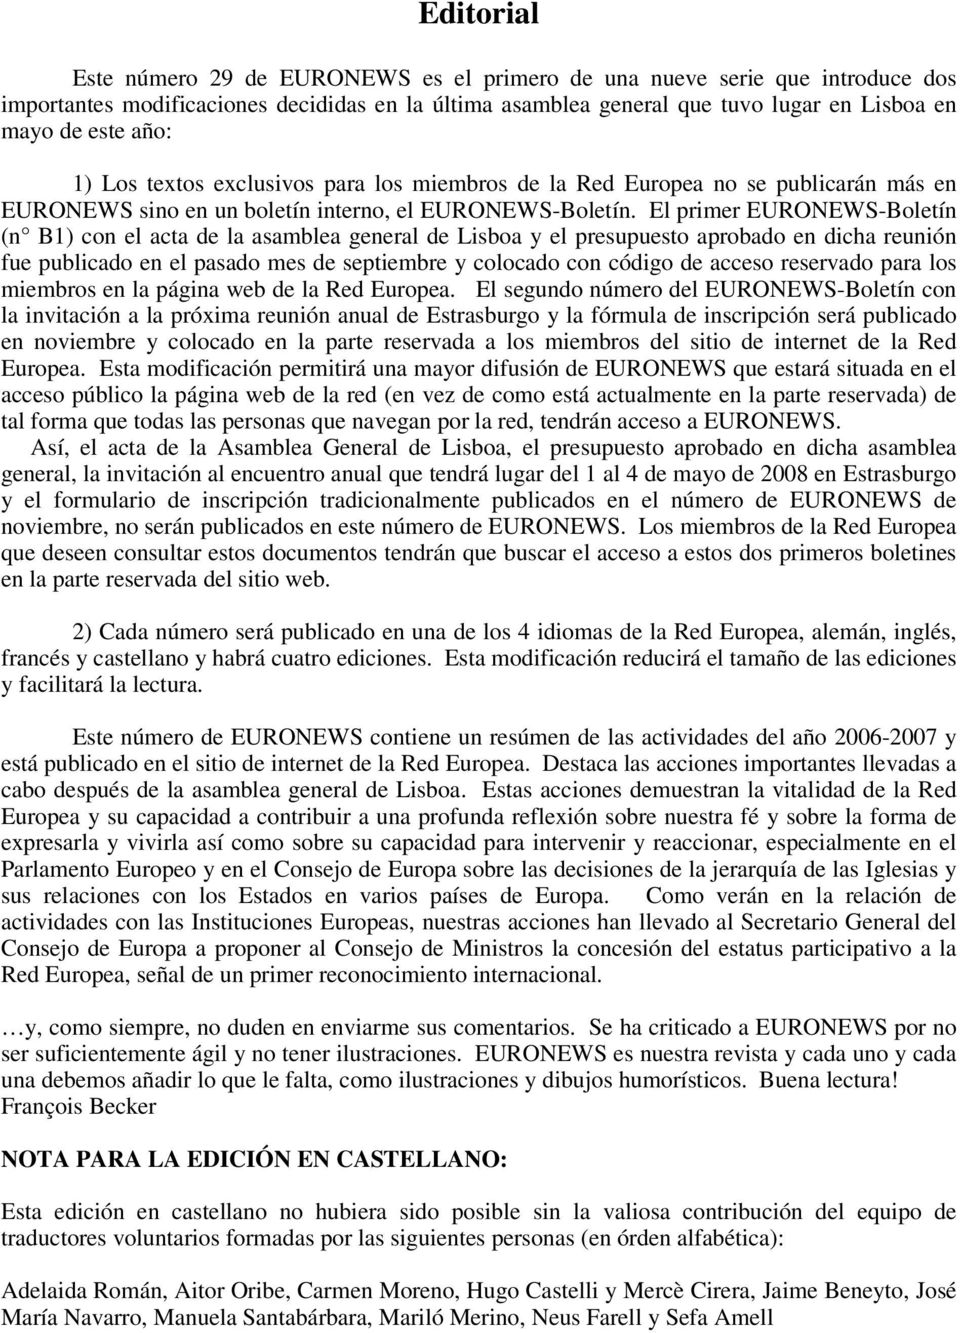 El primer EURONEWS-Boletín (n B1) con el acta de la asamblea general de Lisboa y el presupuesto aprobado en dicha reunión fue publicado en el pasado mes de septiembre y colocado con código de acceso